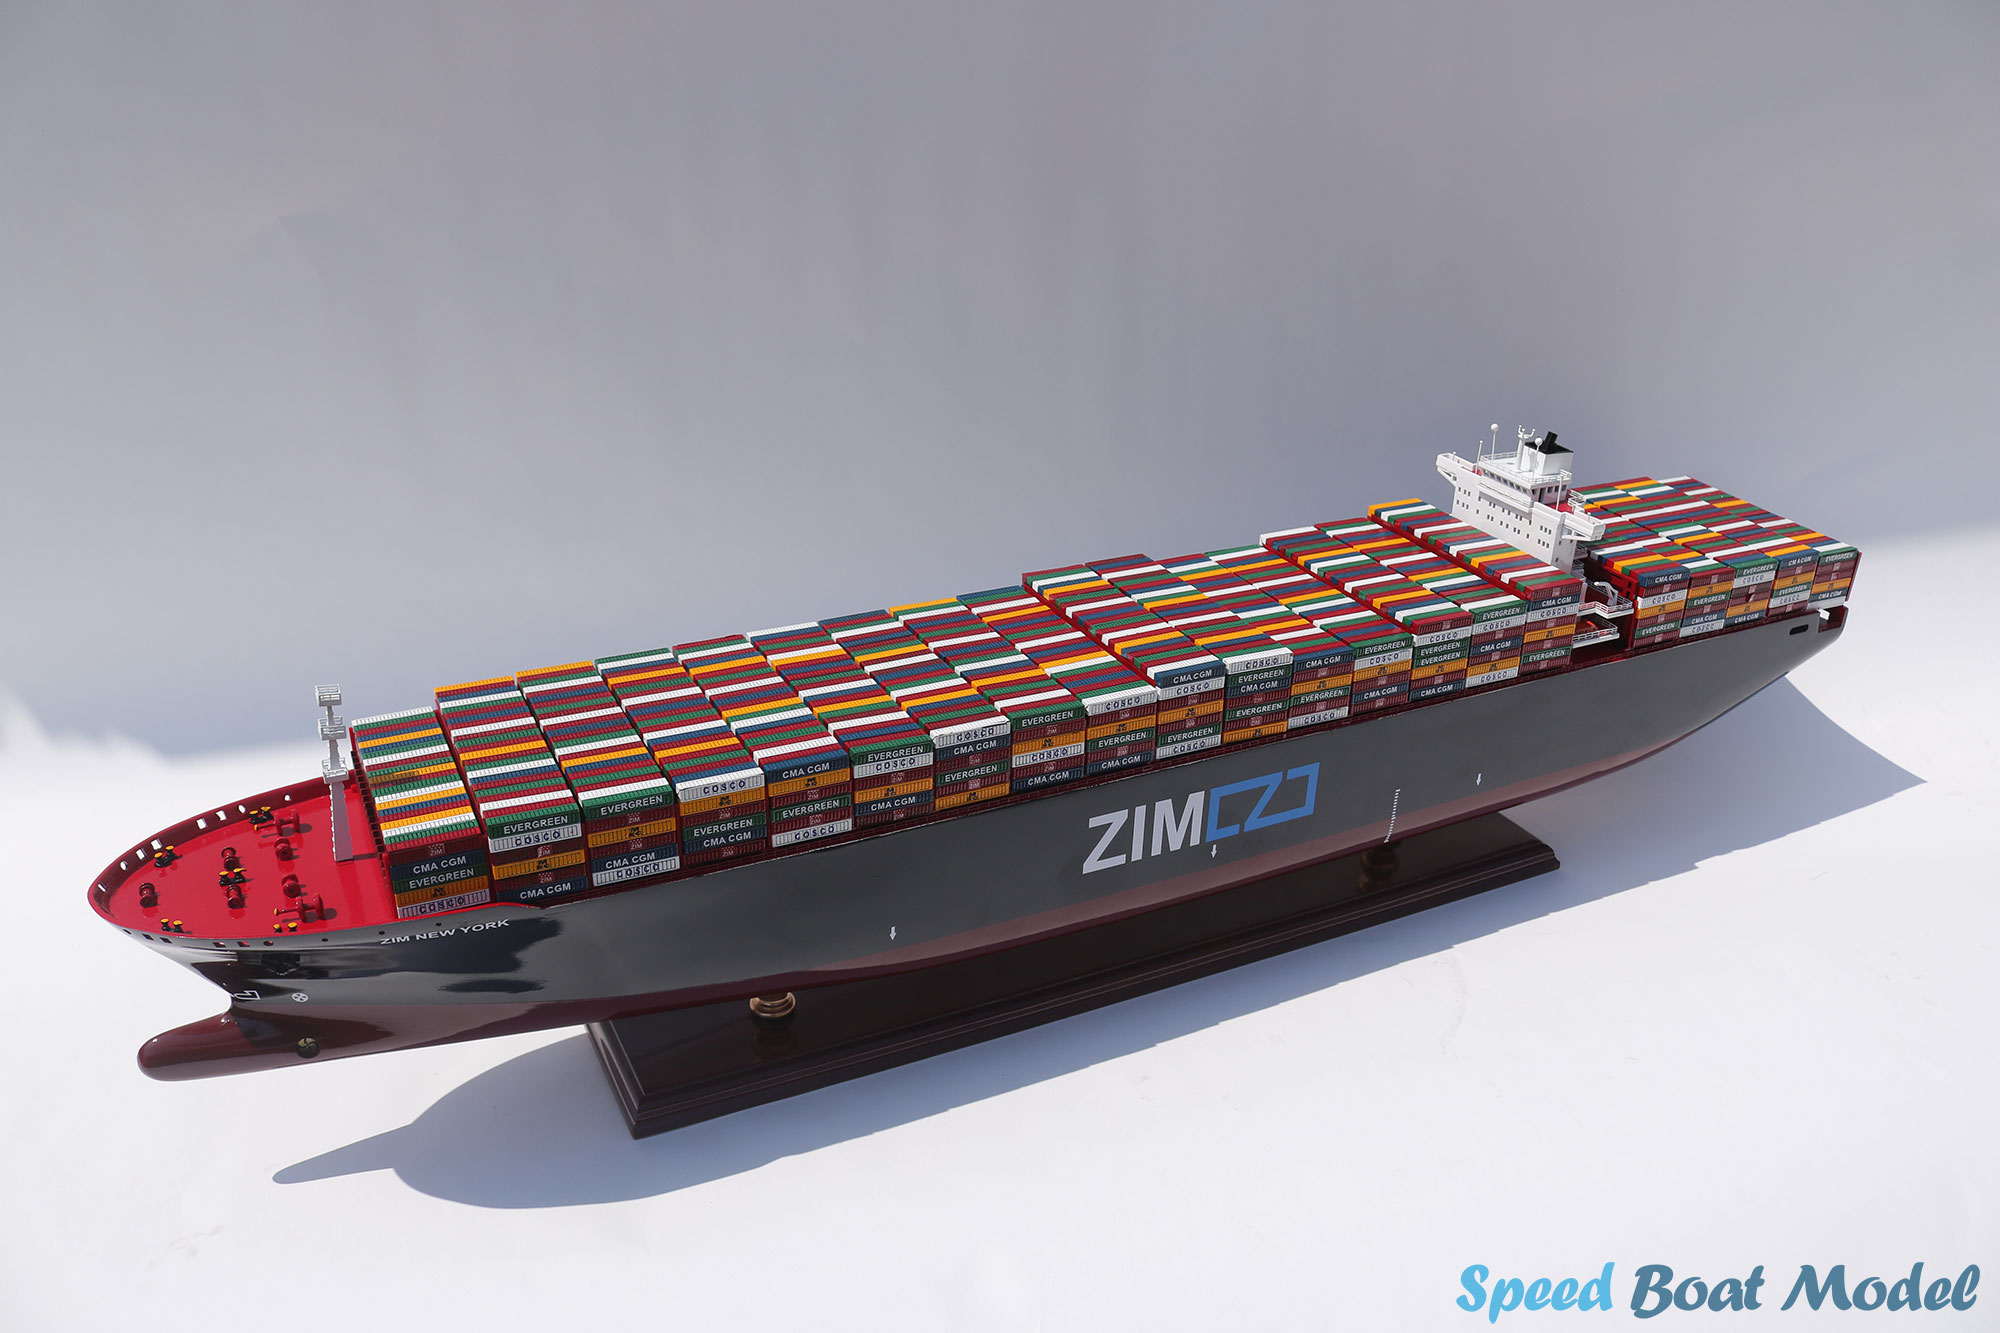 Zim New York Commercial Ship Model 39"